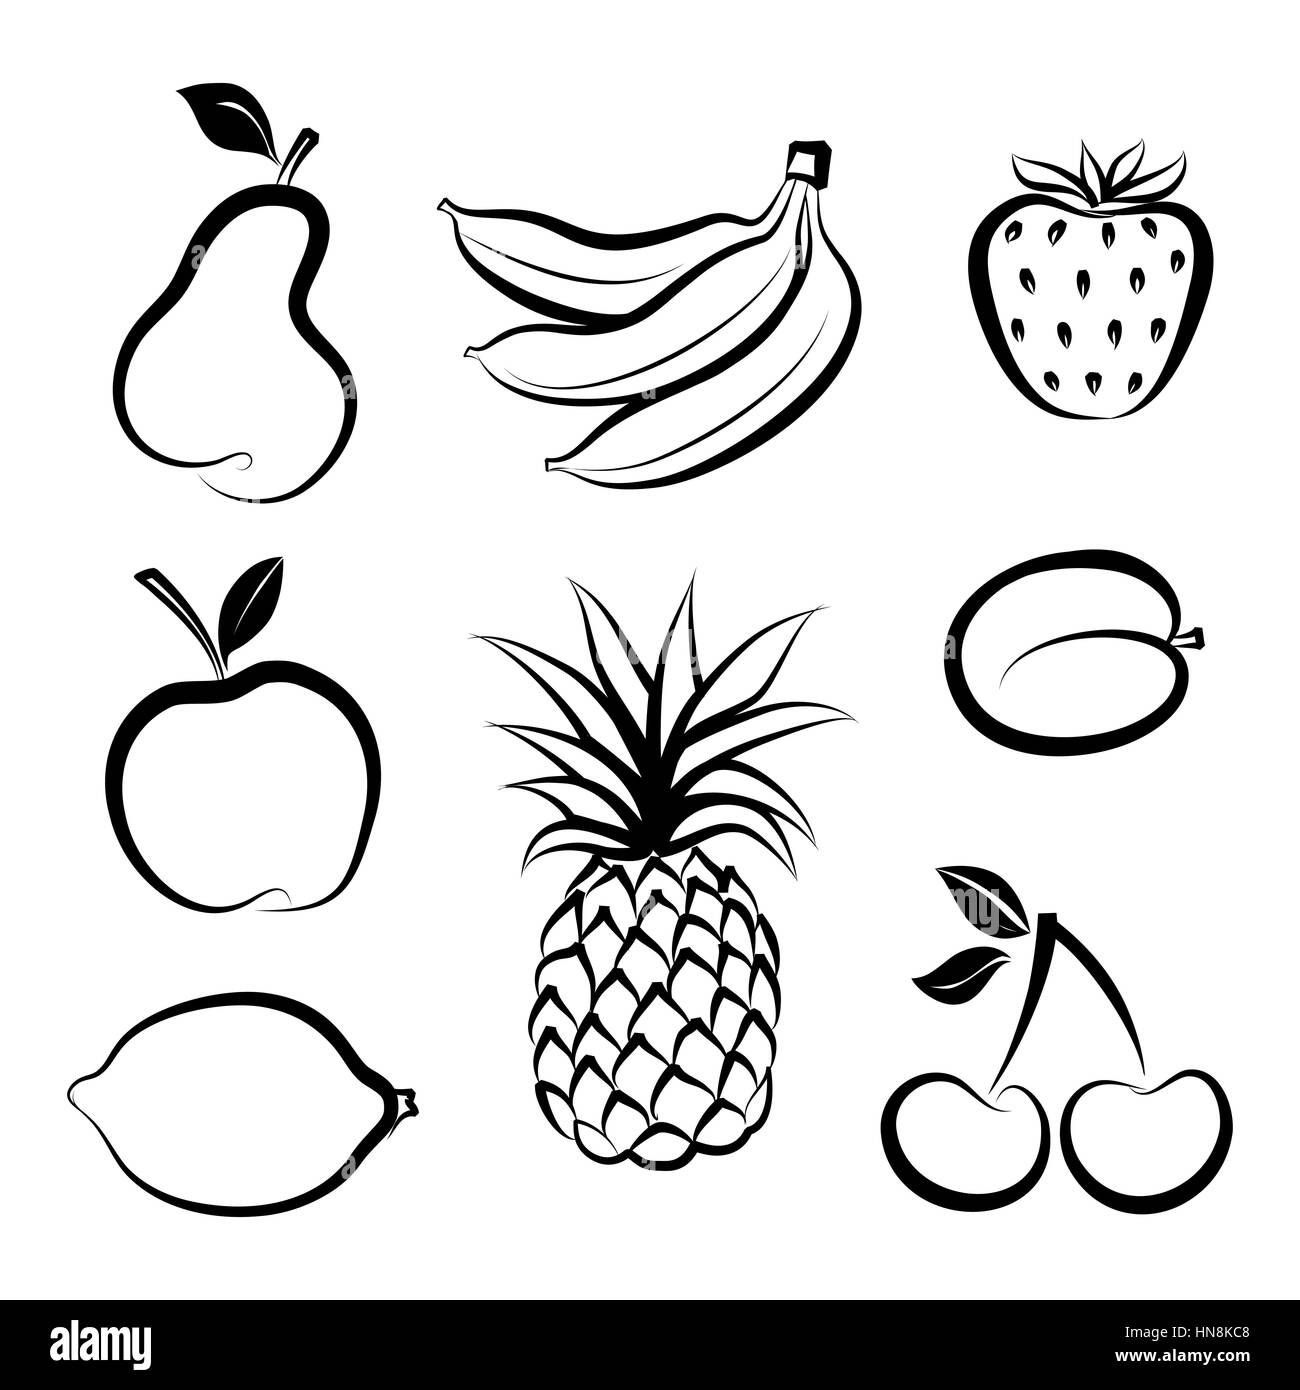 Obst Symbol gesetzt. Hand gezeichnete Skizze Sammlung von fruita und Beeren. Stock Vektor